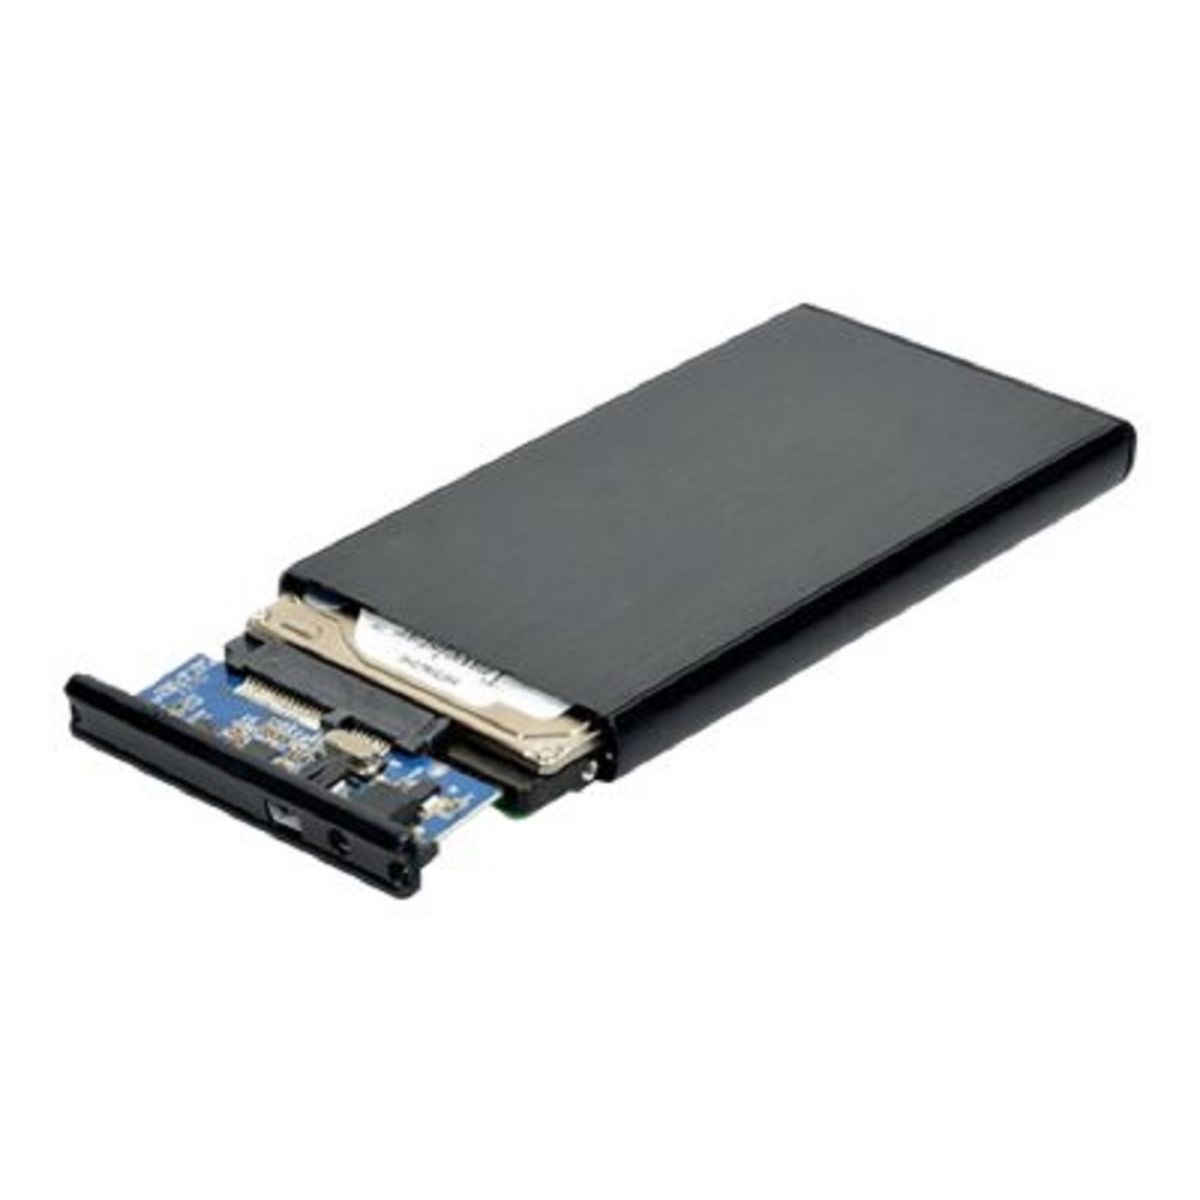 PORT Boitier externe pour disque dur HDD enclosure SATA 2.5 pas cher 